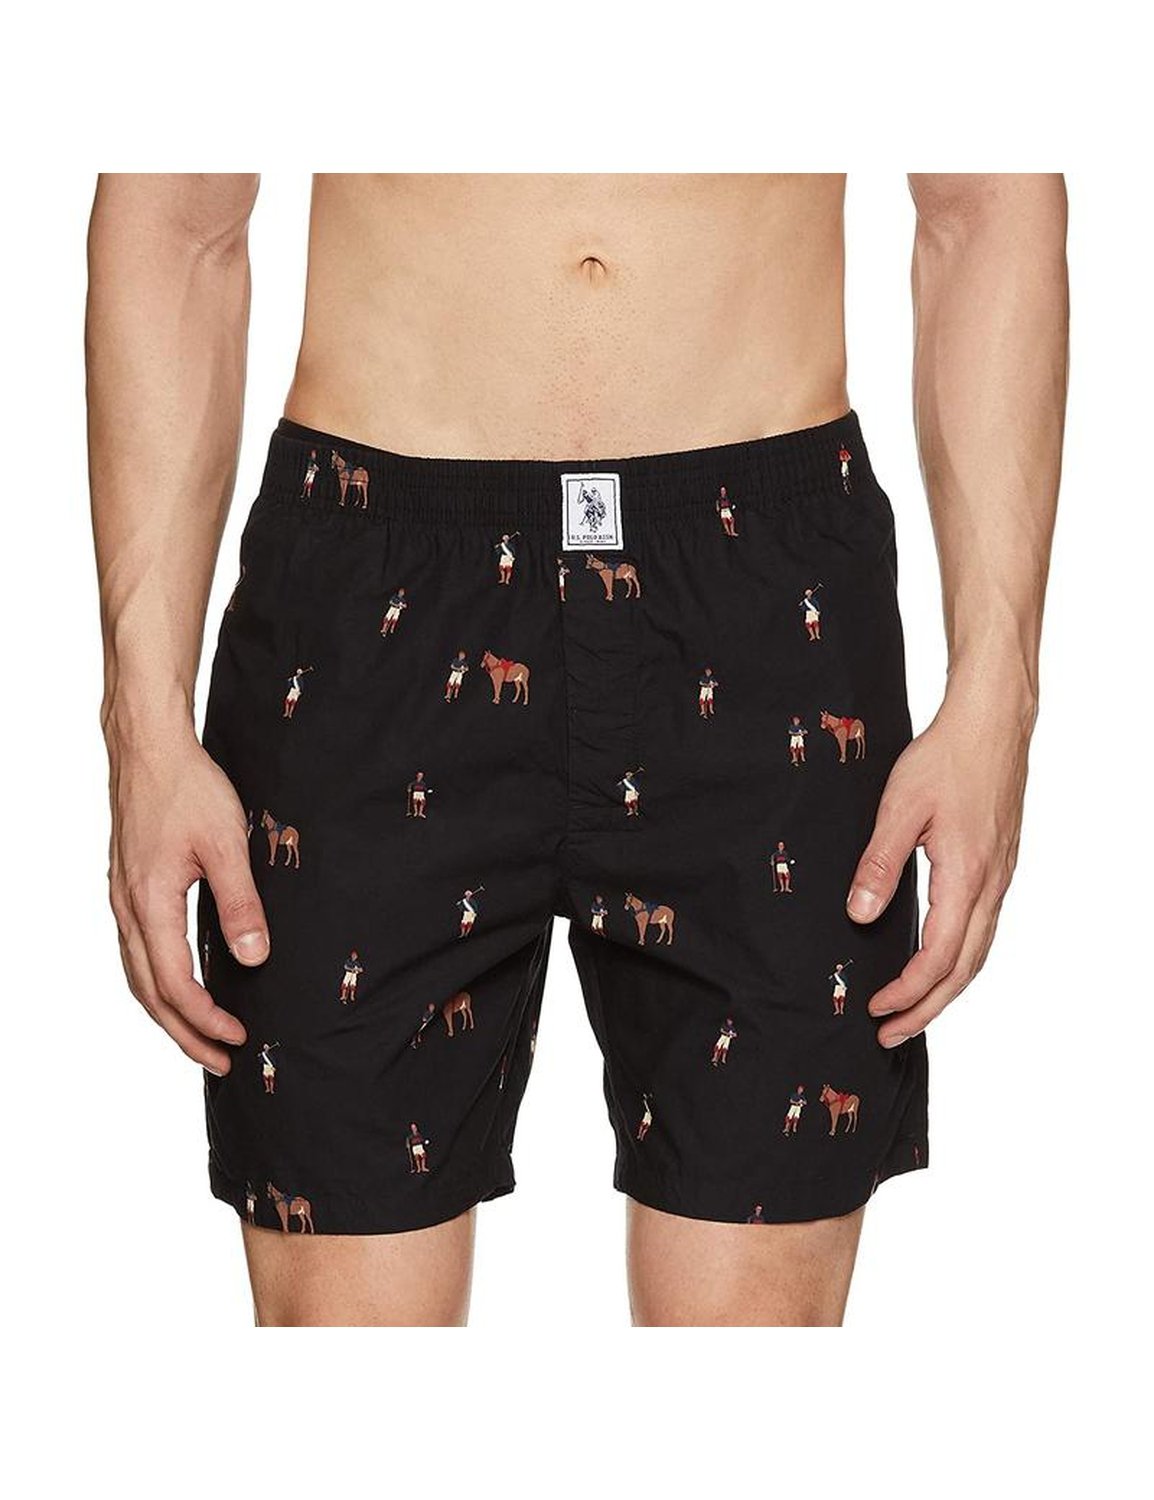 US Polo Printed Black Cotton Boxers Shorts for Men - Stilento